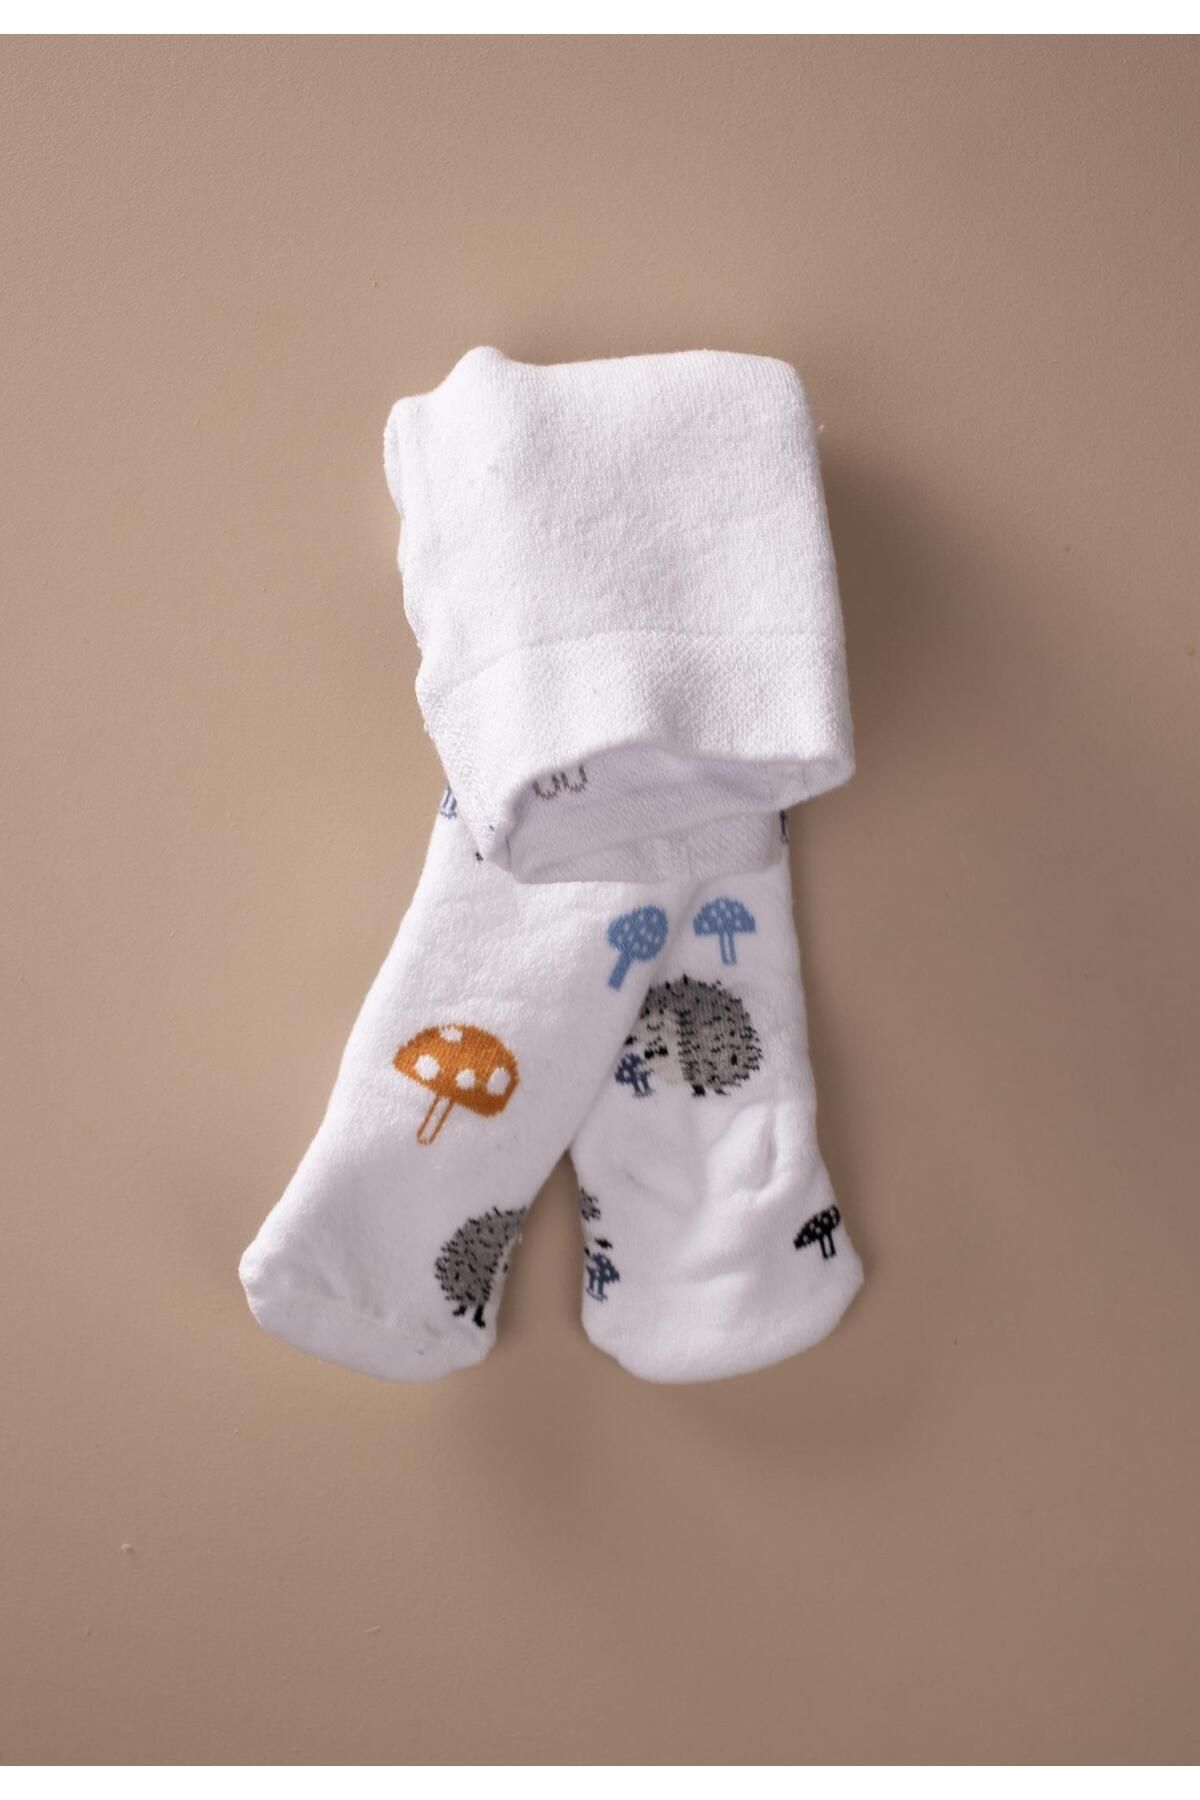 Cigit Kirpi Havlulu Bebe Kulotlu Çorap Beyaz